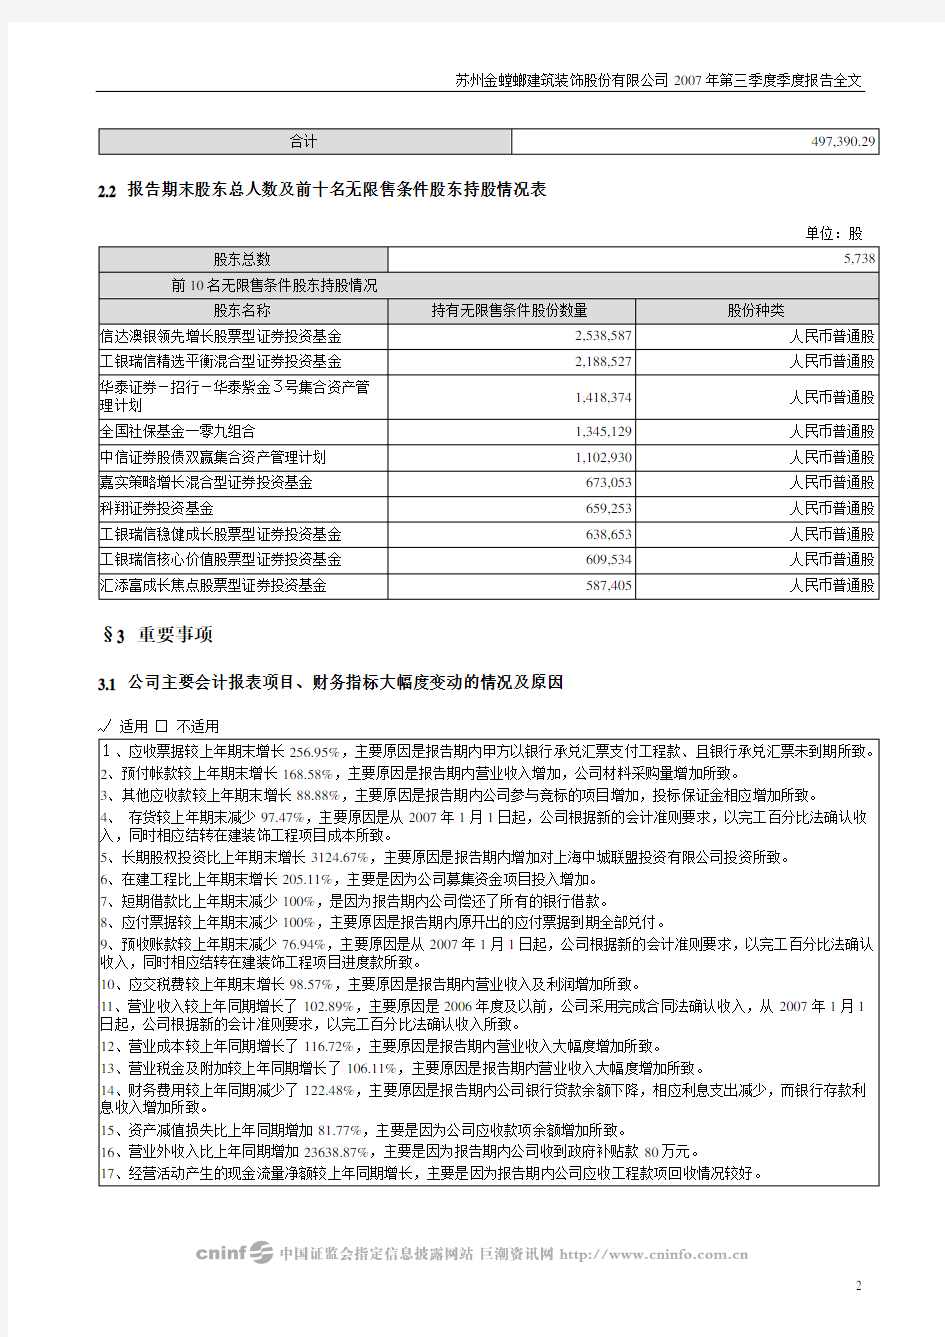 苏州金螳螂建筑装饰股份有限公司2007年第三季度季度报告全文